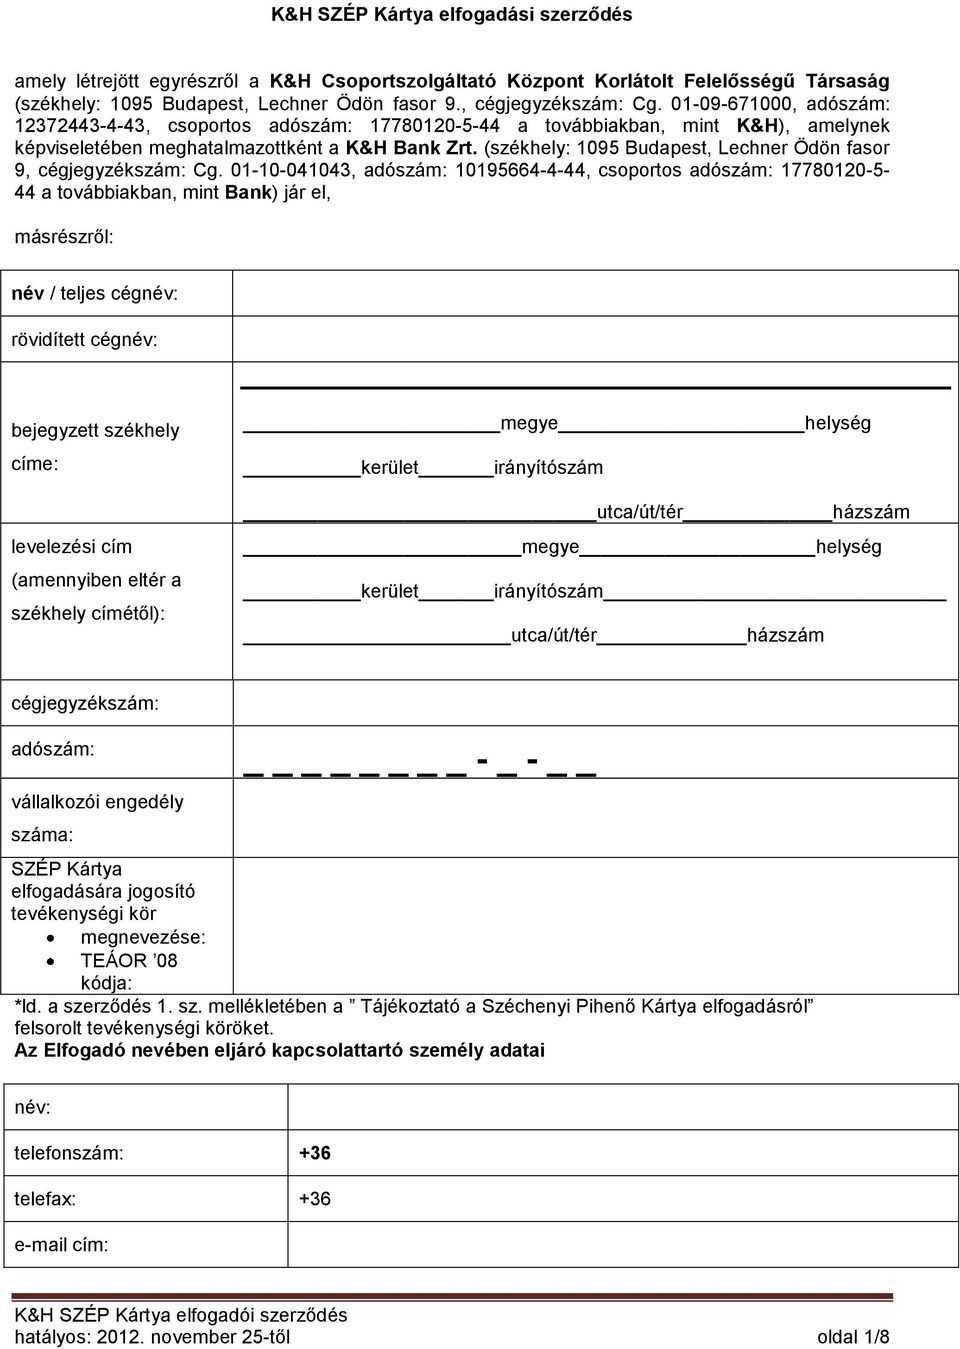 K&H SZÉP Kártya elfogadási szerződés - PDF Ingyenes letöltés